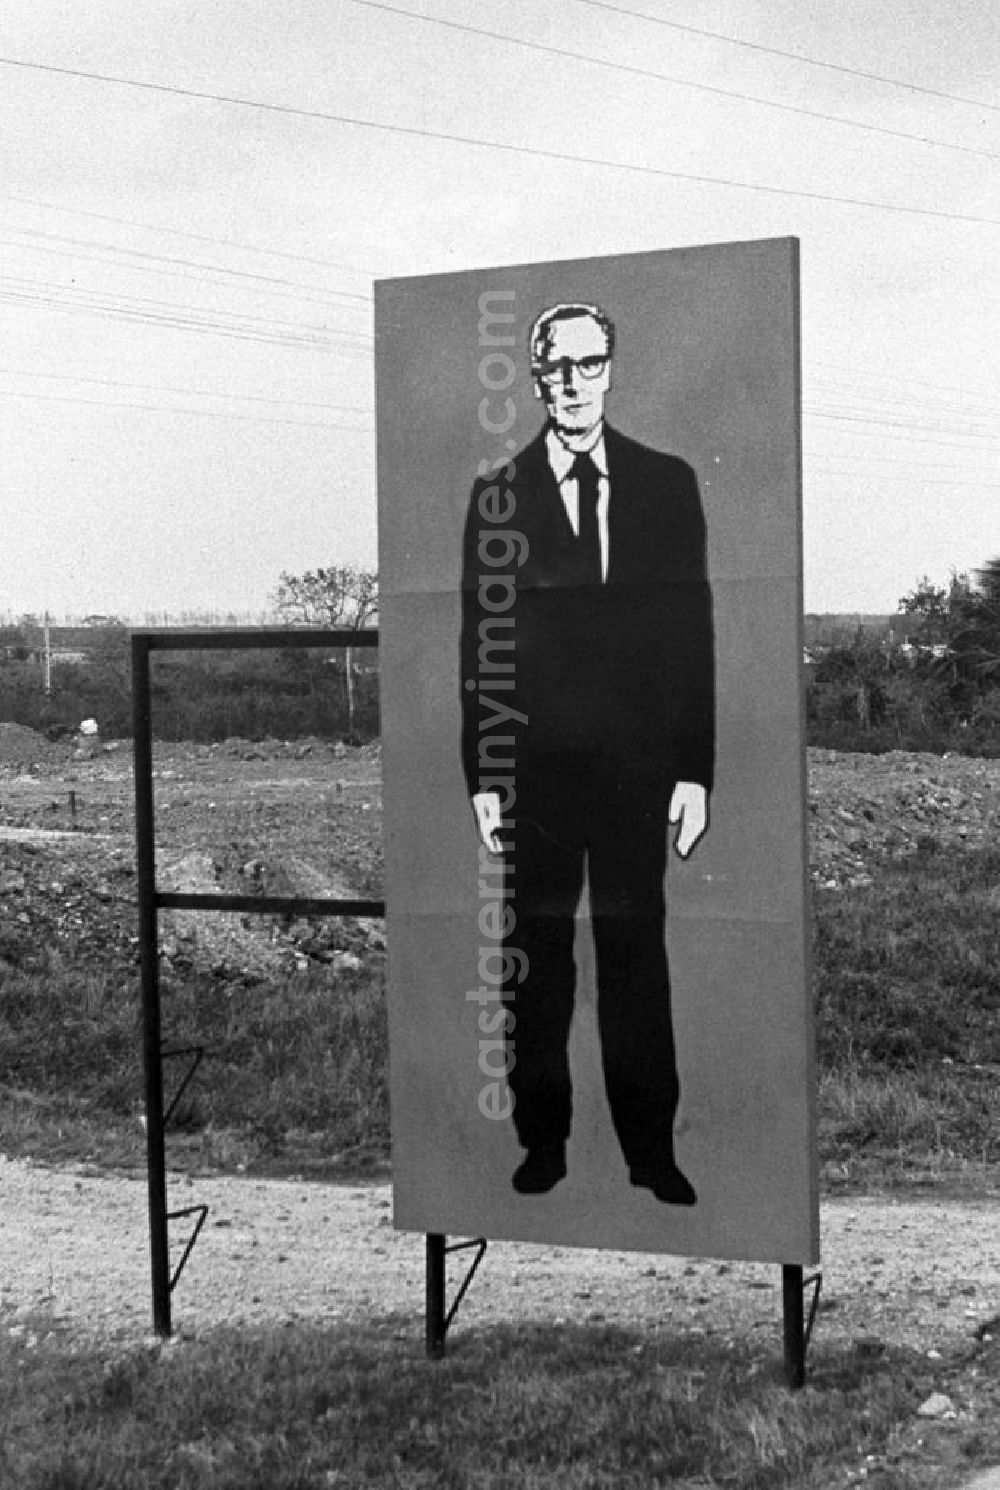 Matanzas: Für den Empfang des Staats- und Parteivorsitzenden der DDR, Erich Honecker, sind die Straßen in Matanzas mit Plakaten festlich geschmückt - hier ein lebensgroßes Abbild von Honecker. Honecker stattete vom 2